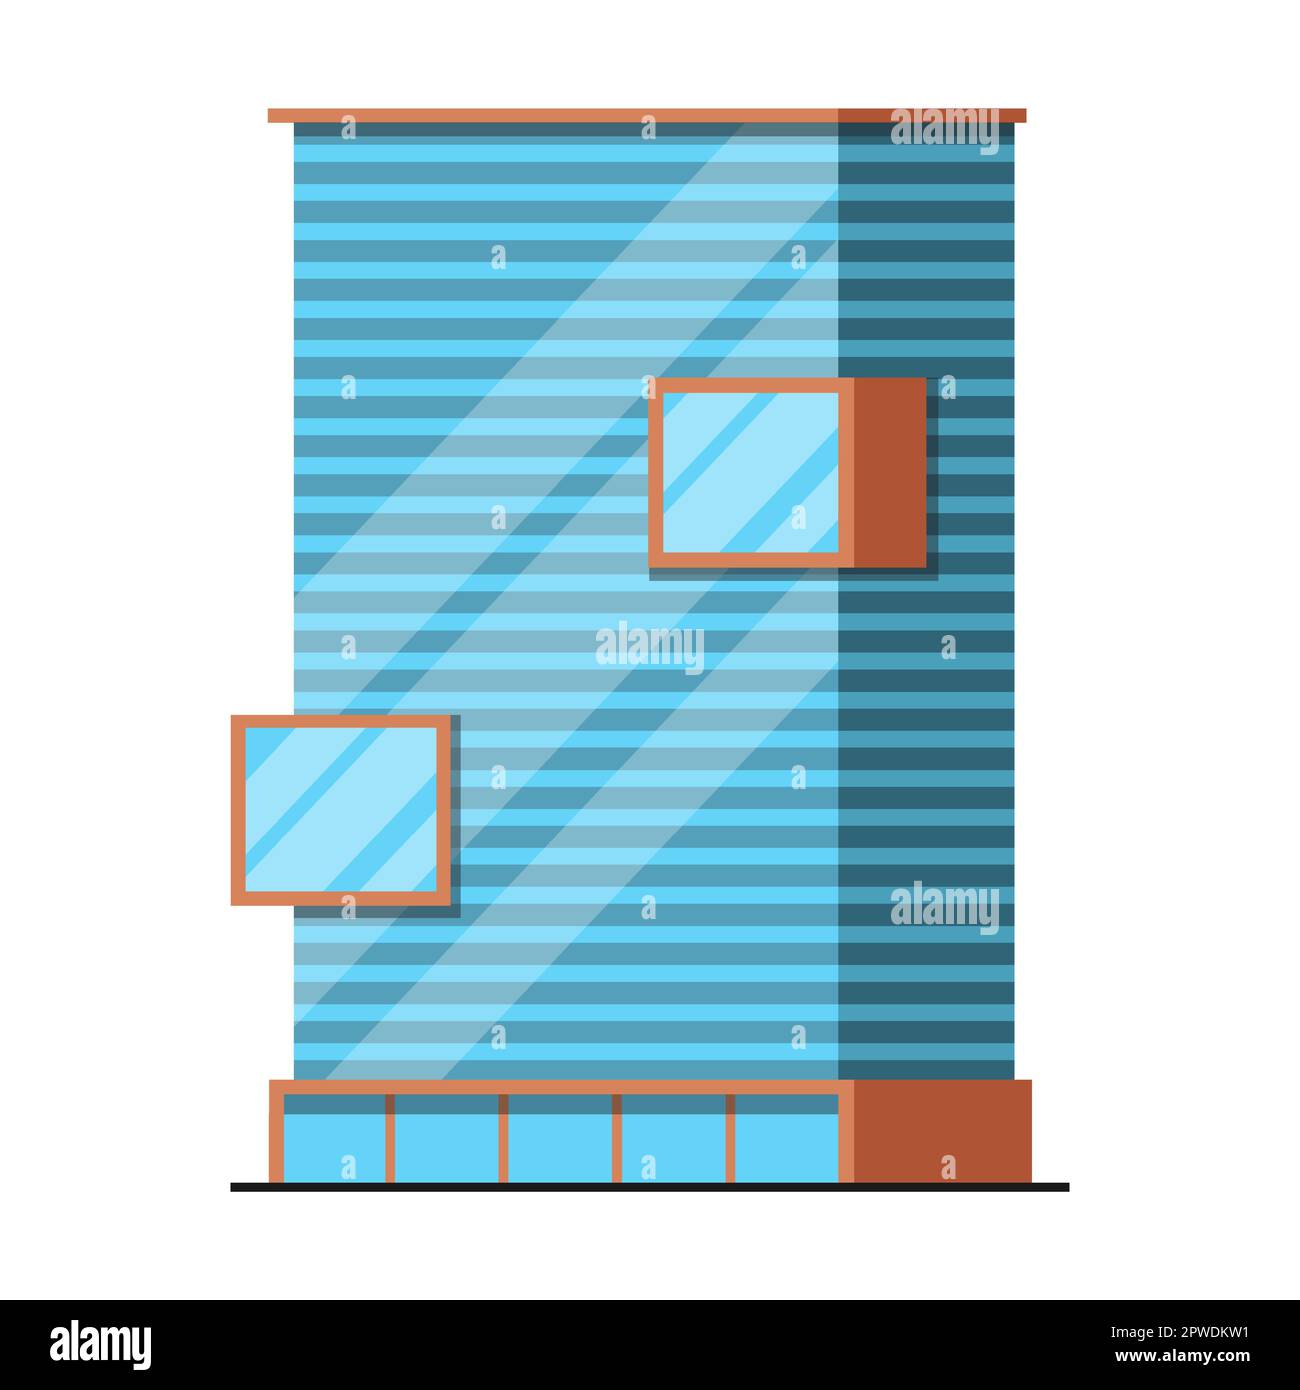 Création d'un bâtiment de grande hauteur, bureau ou appartement, illustration vectorielle. Gratte-ciel comme élément de la ville moderne pour le paysage urbain Illustration de Vecteur